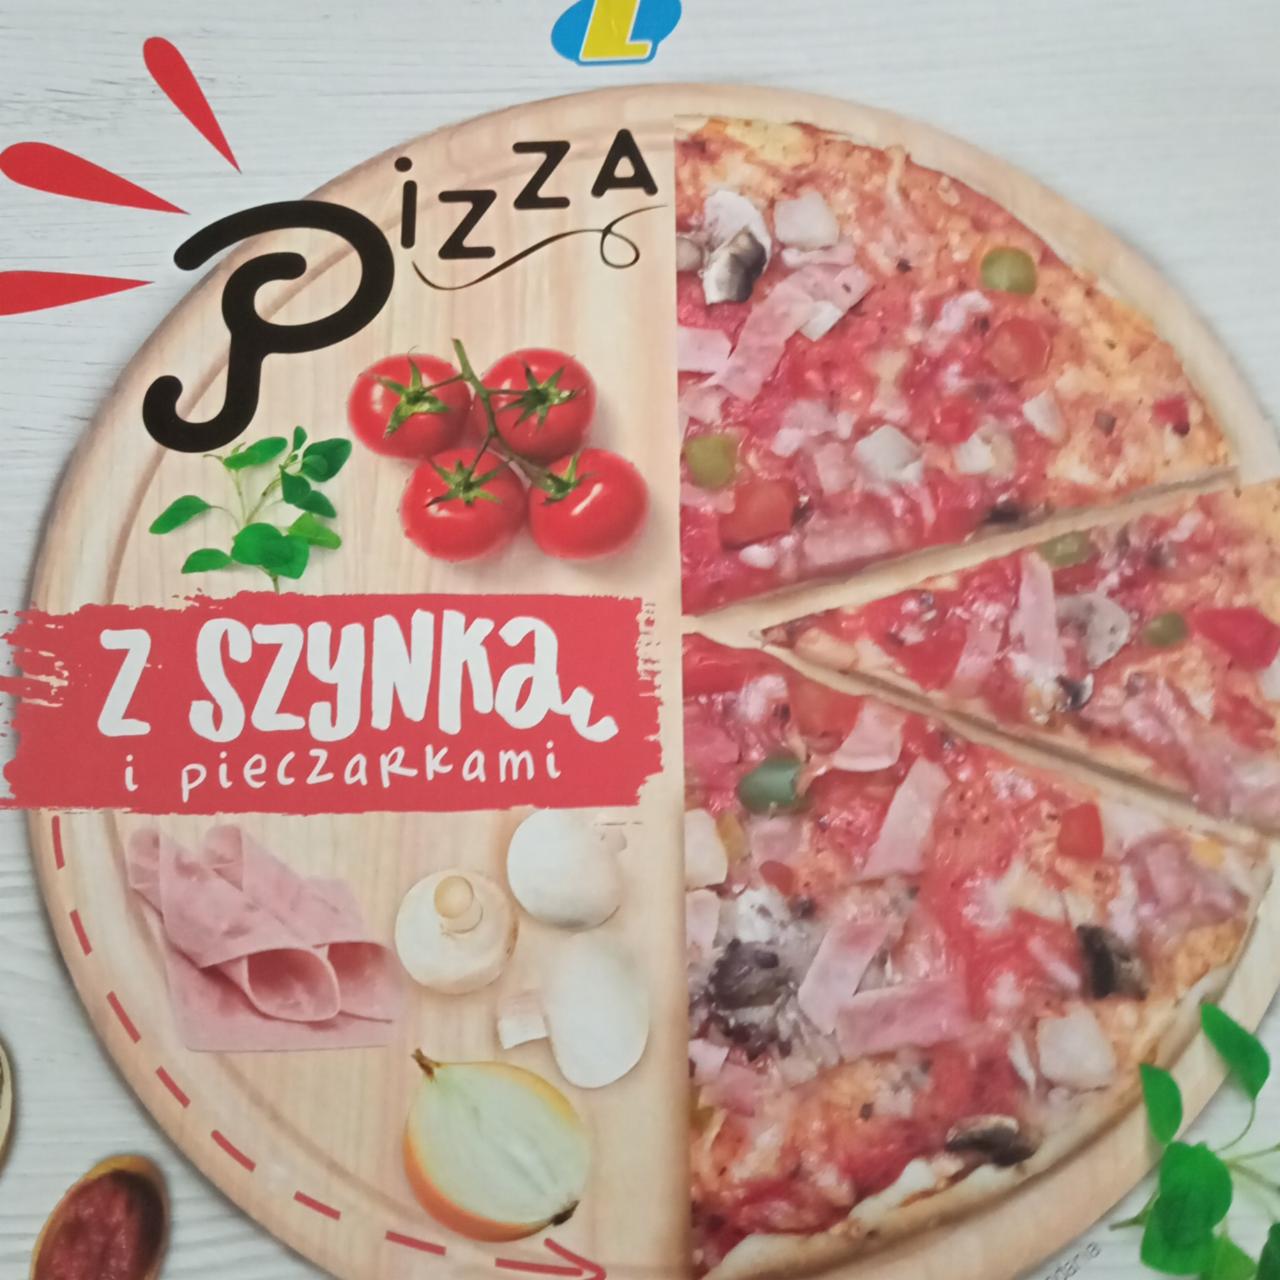 Zdjęcia - Pizza z szynką i pieczarkami Lewiatan